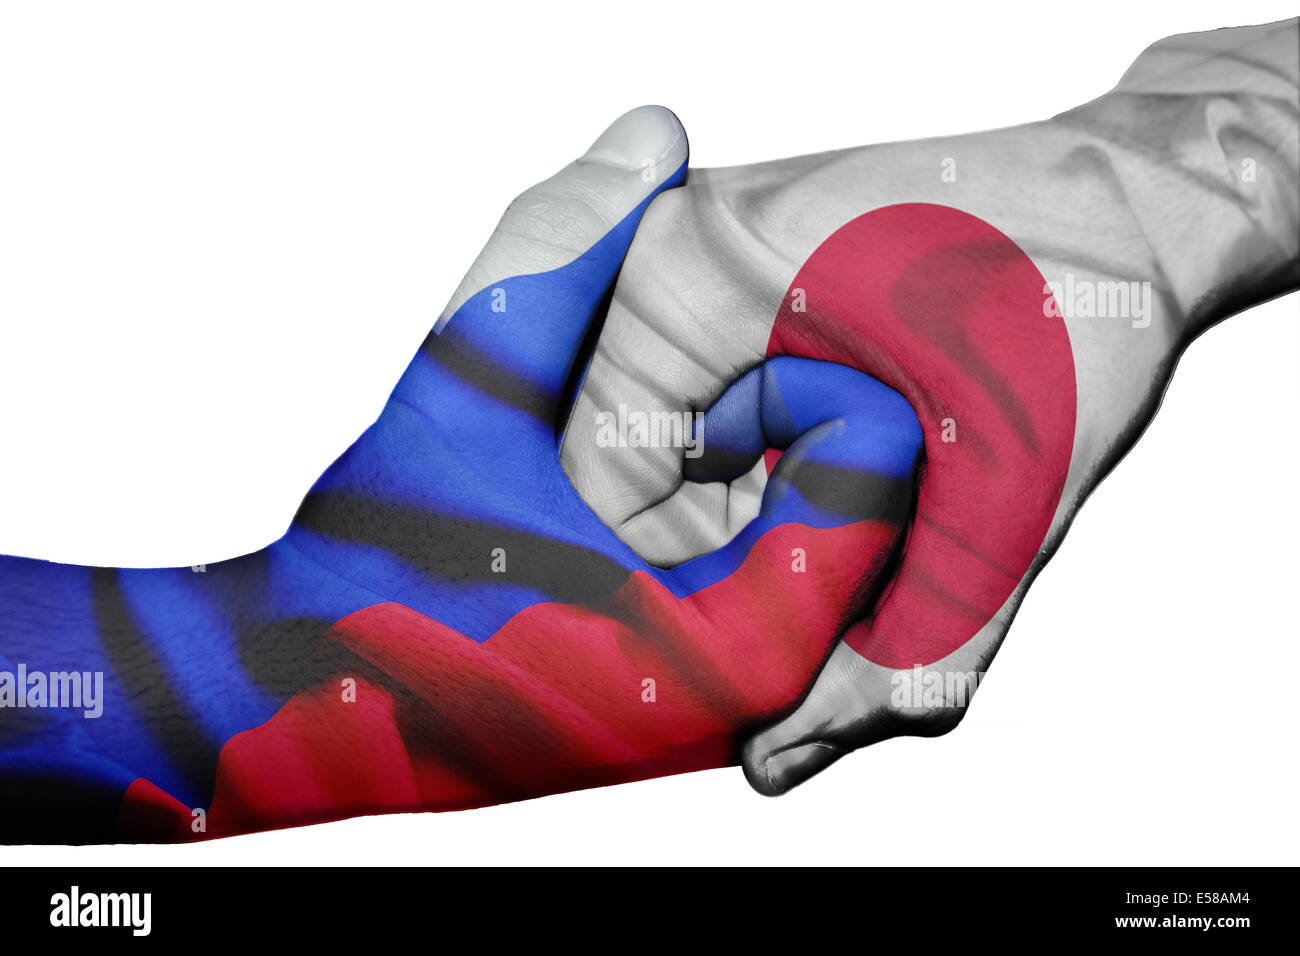 Handshake diplomatiche tra paesi: bandiere della Russia e del Giappone sovradipinta le due mani Foto Stock